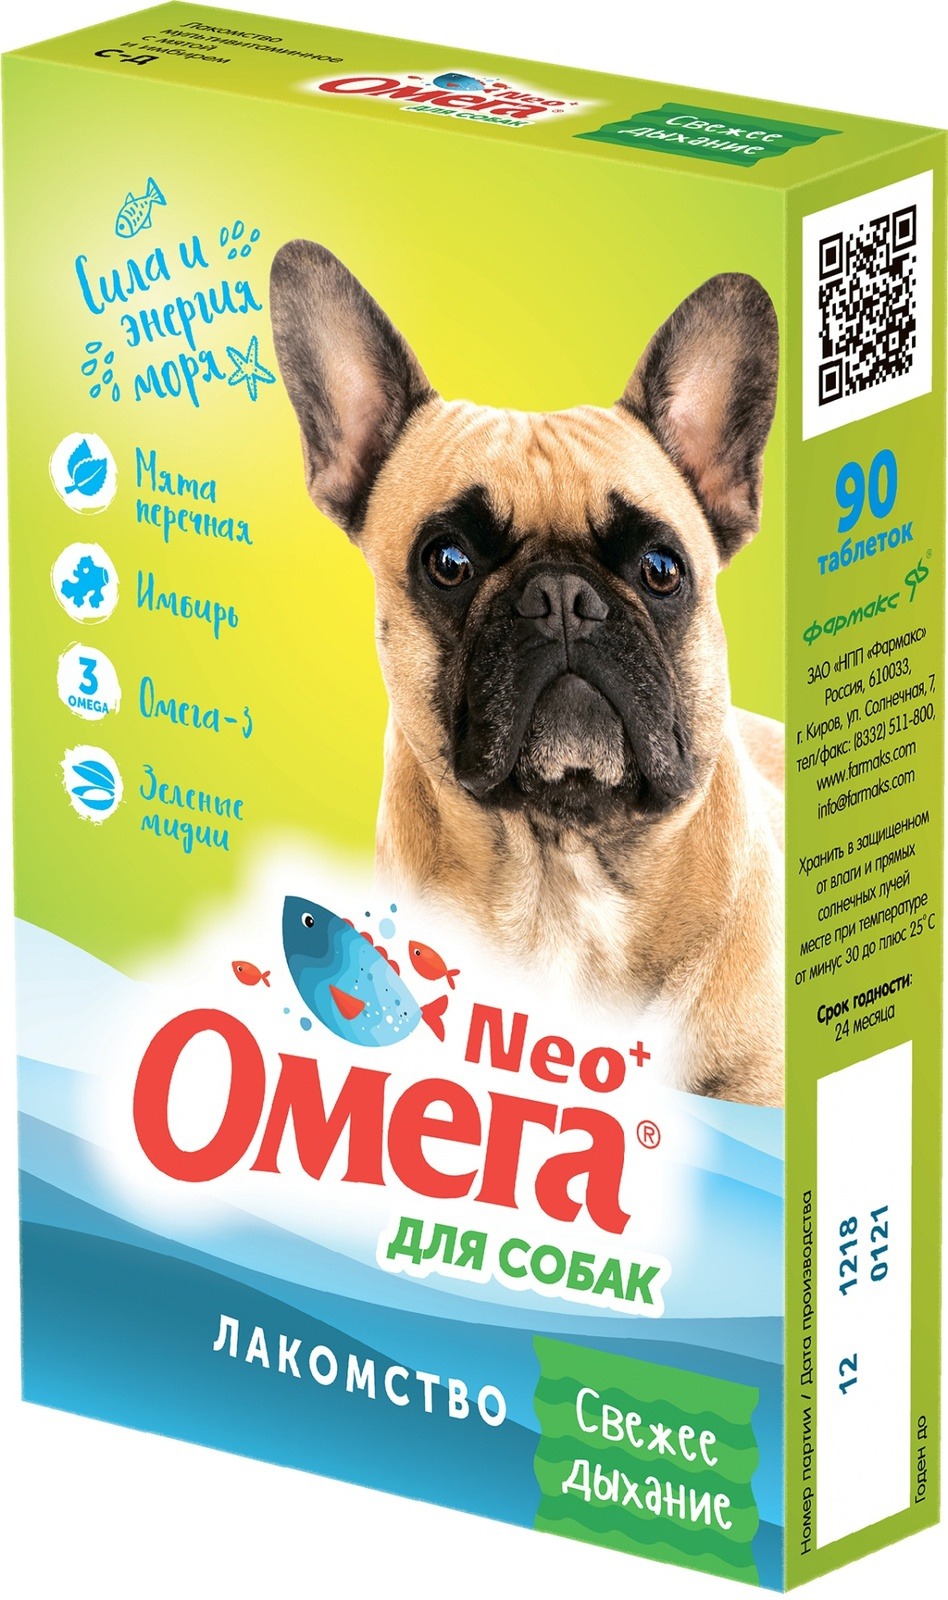 Витаминный комплекс для собак Омега Neo+, «Свежее дыхание» с мятой и имбирем 90 таб, 5 шт